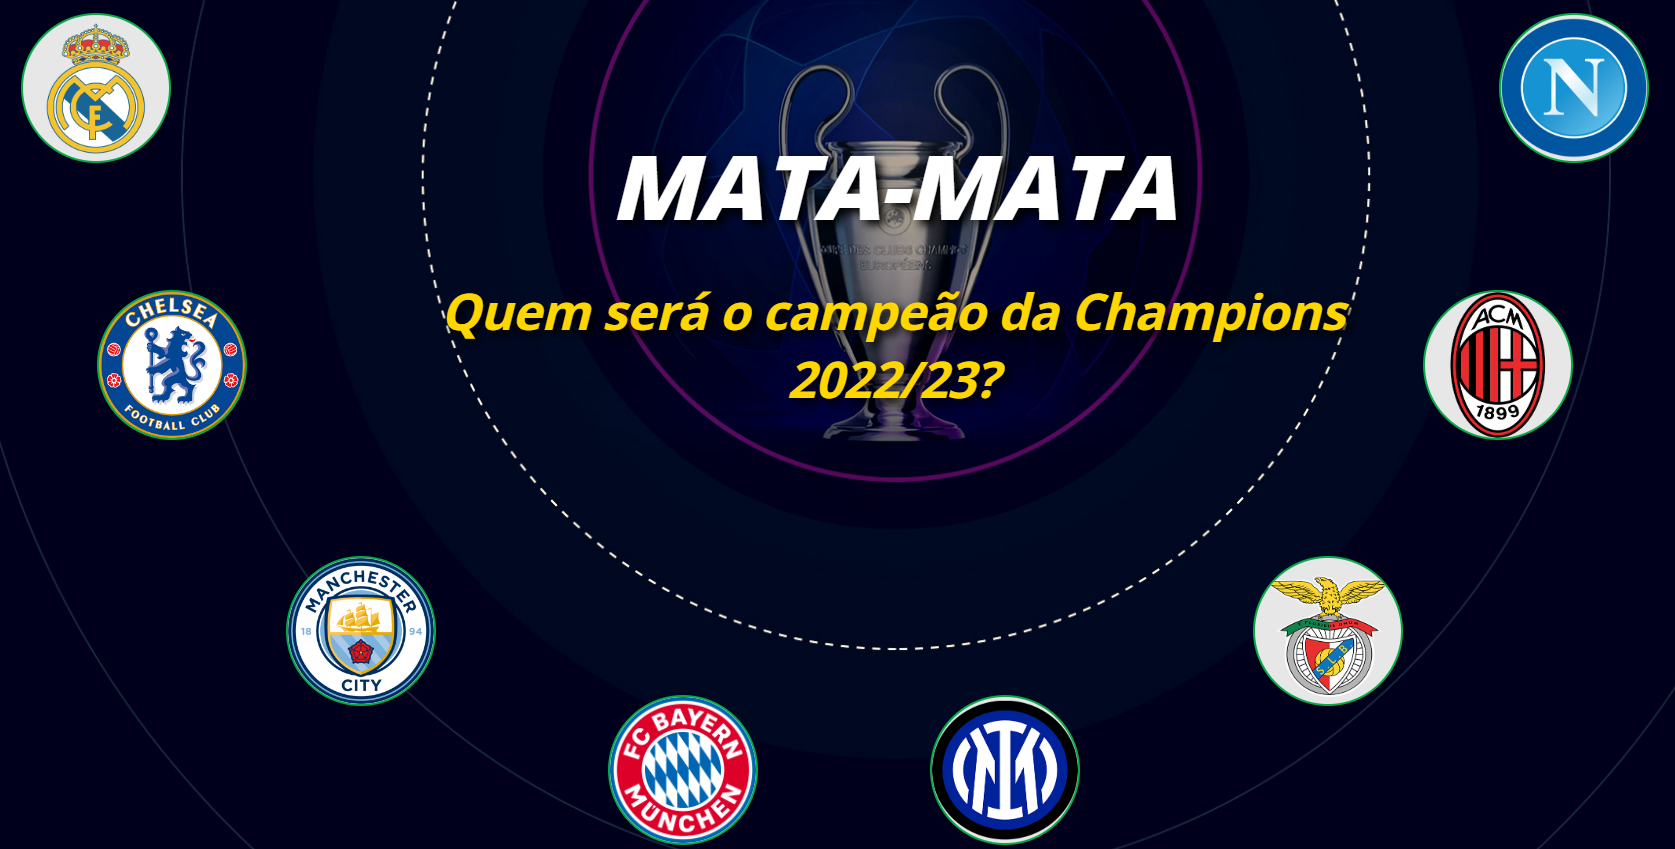 Mata-mata: quem será o campeão da Champions 2022/23?